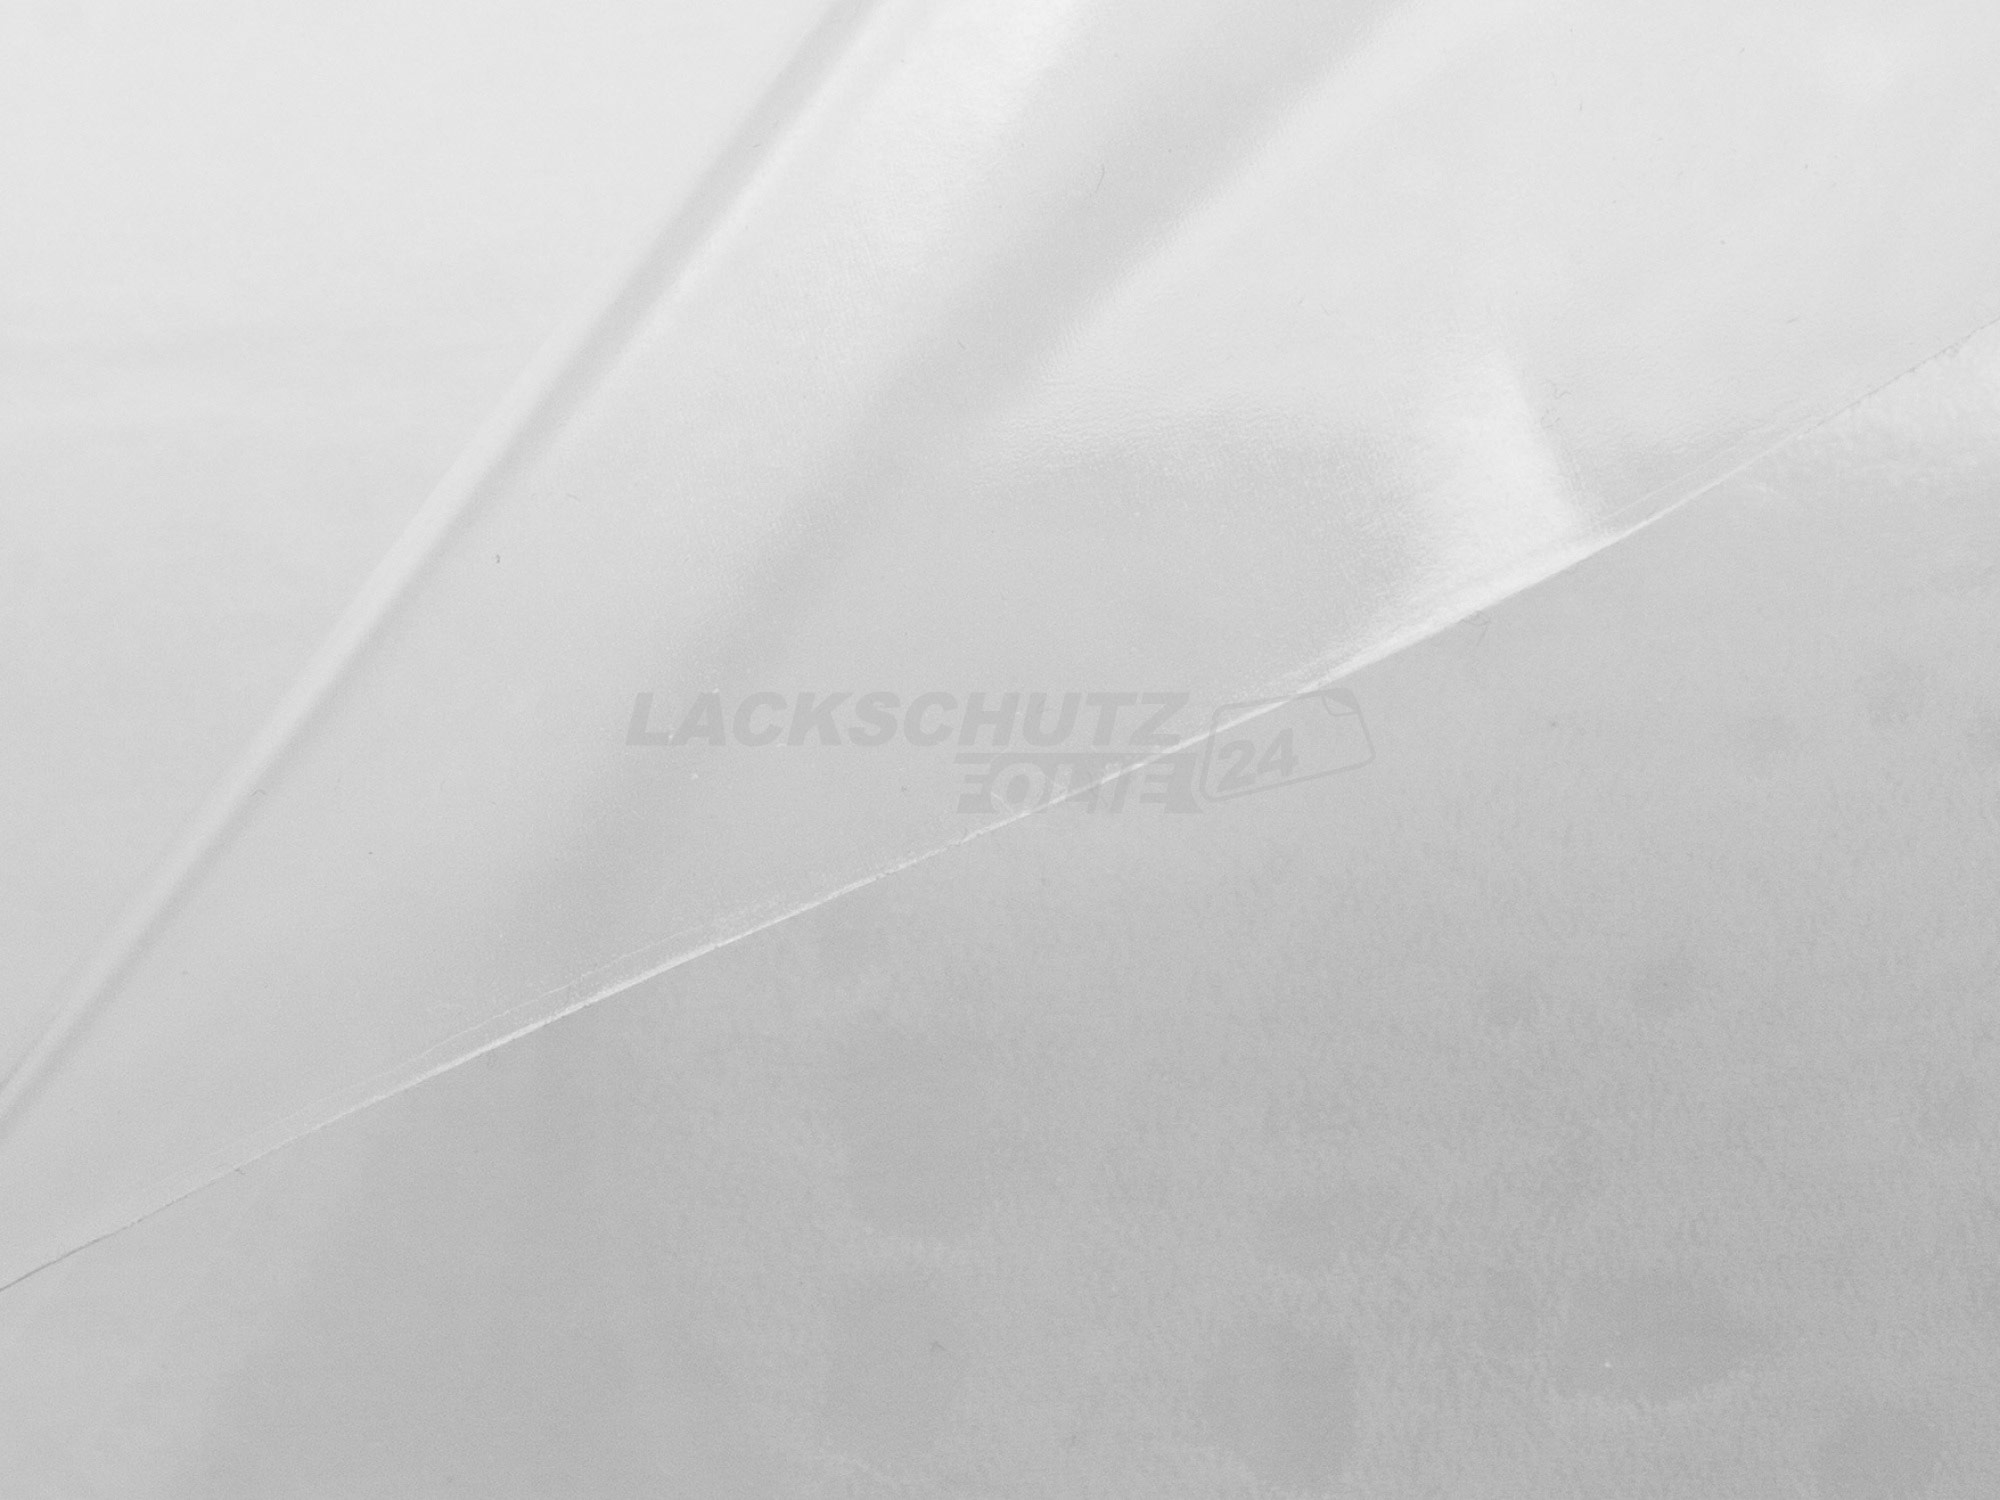 Ladekantenschutzfolie - Transparent Glatt Hochglänzend 150 µm stark für VW / Volkswagen Sharan (II), Typ 7N, ab BJ 09/2010 + Facelift